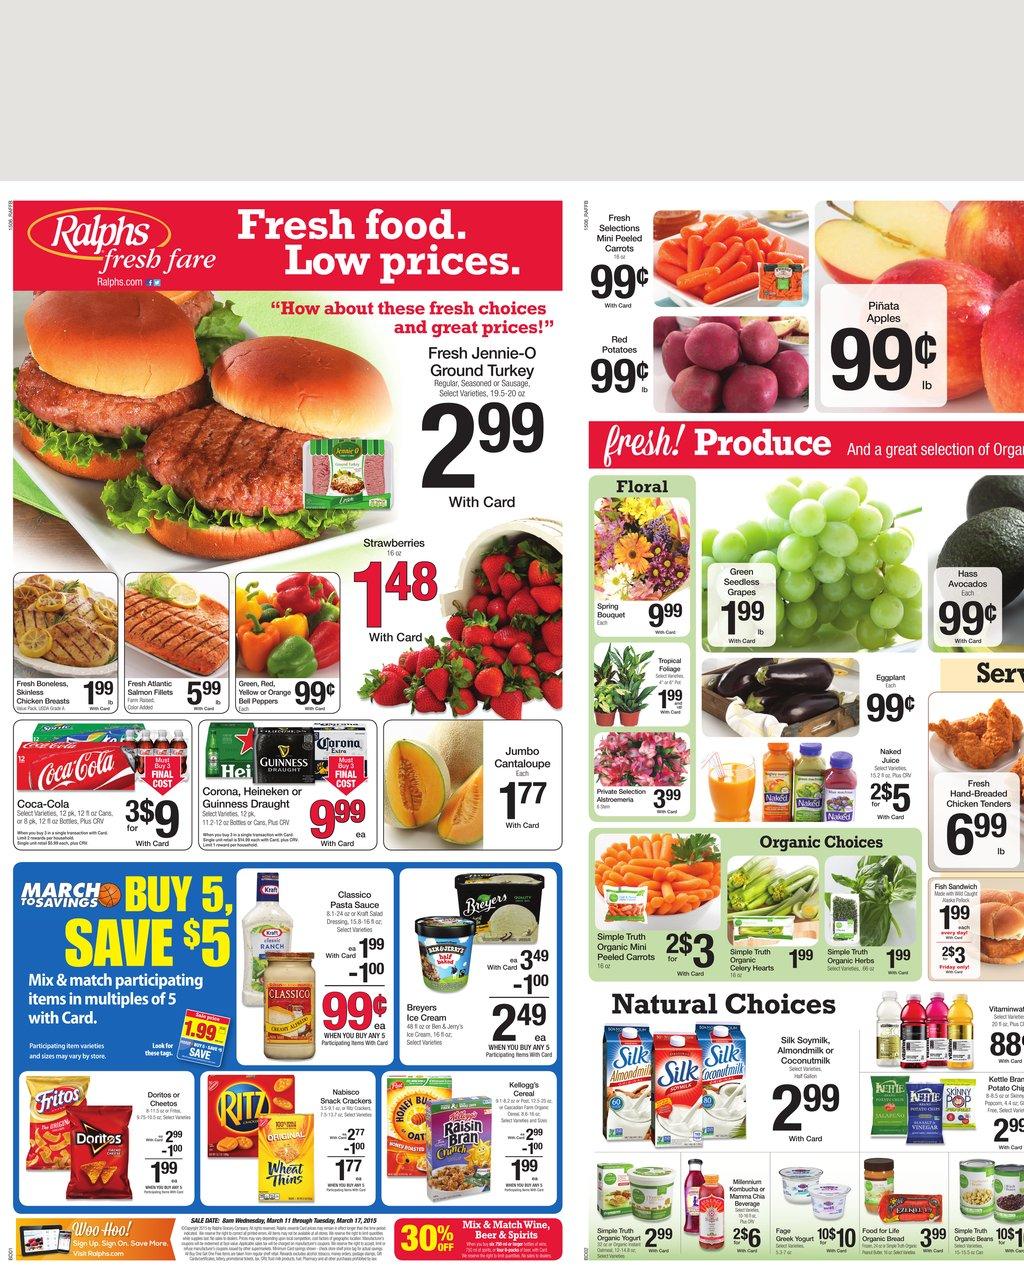 Weekly Ad Ralphs Supermarket Food Preview Fresh Savings Weeklyads2.